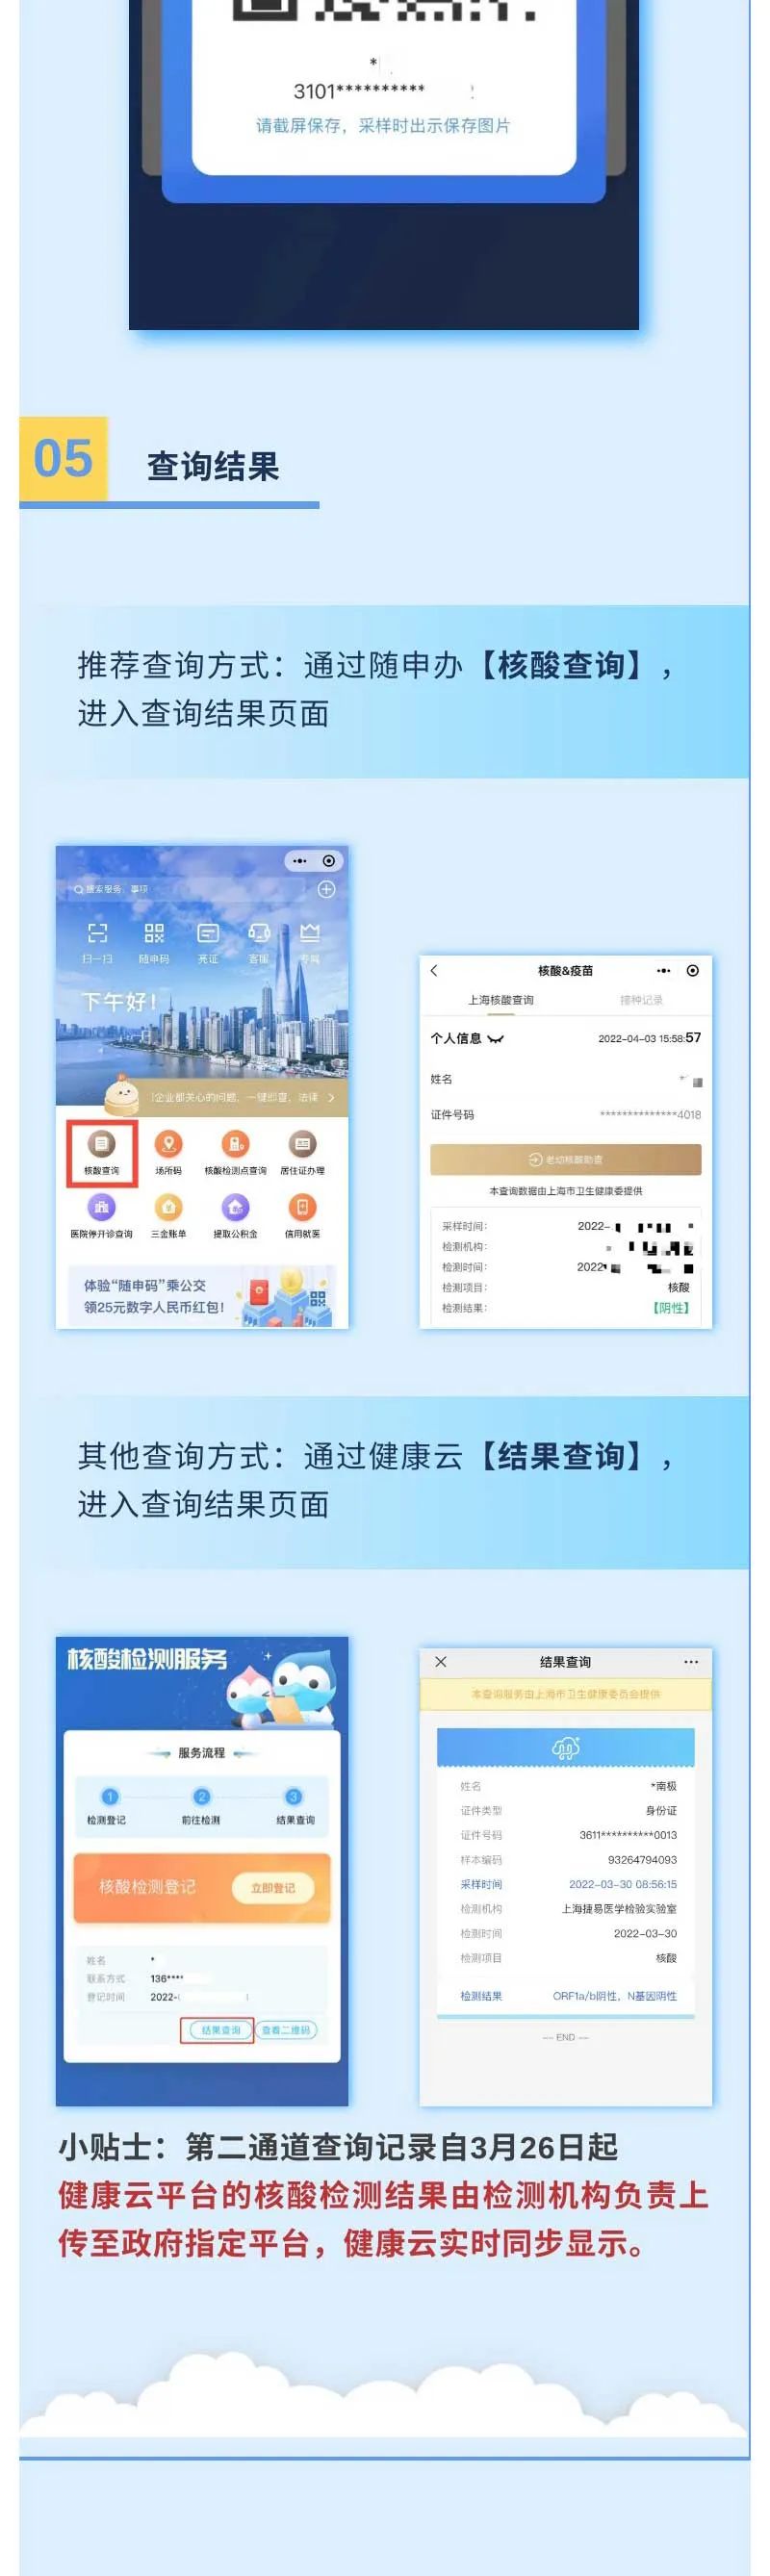 “上海发布”微信公众号 图